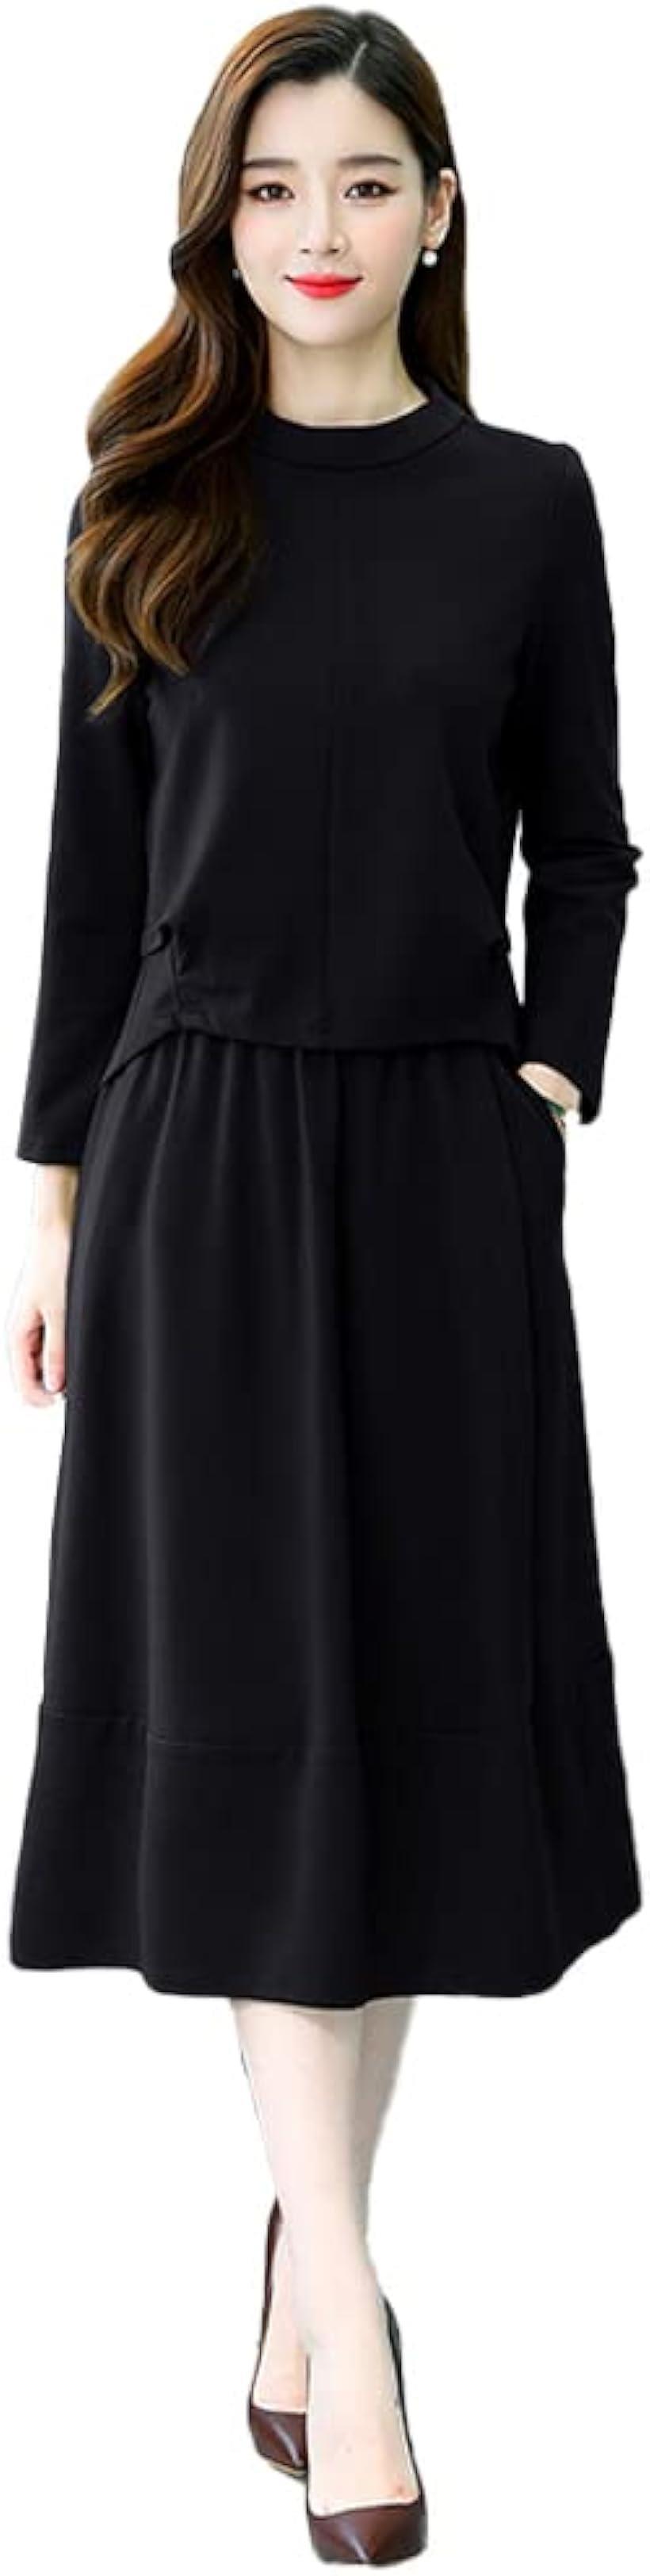 喪服 礼服 フォーマル レディース セットアップ 長袖 スカート 冠婚葬祭 セレモニー( ブラック, XL)